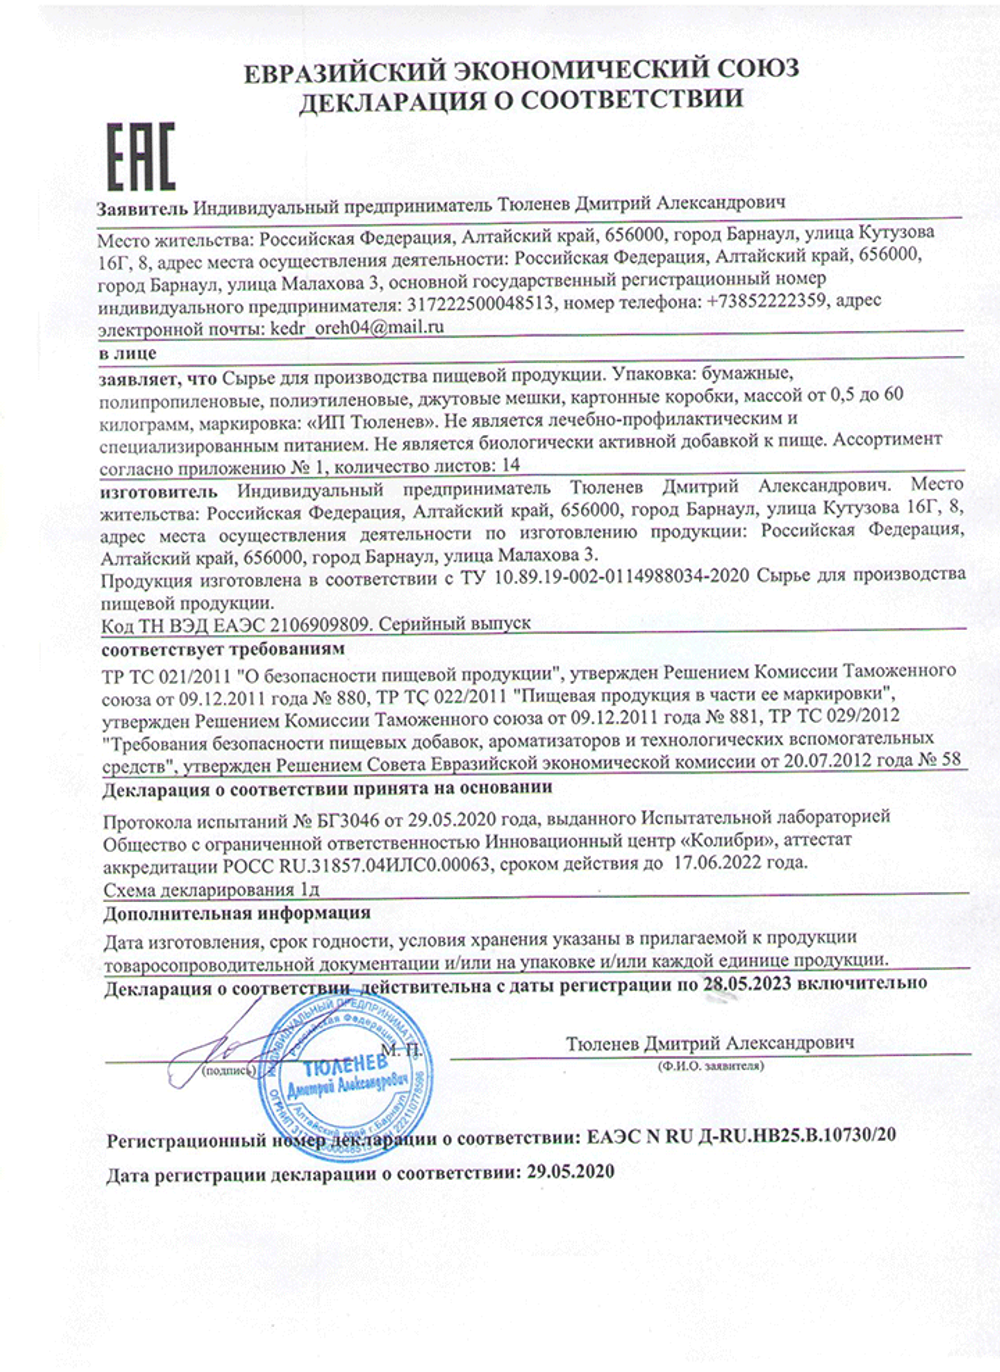 Изображение сертификата соответствия ягод калины-adonnis.ru